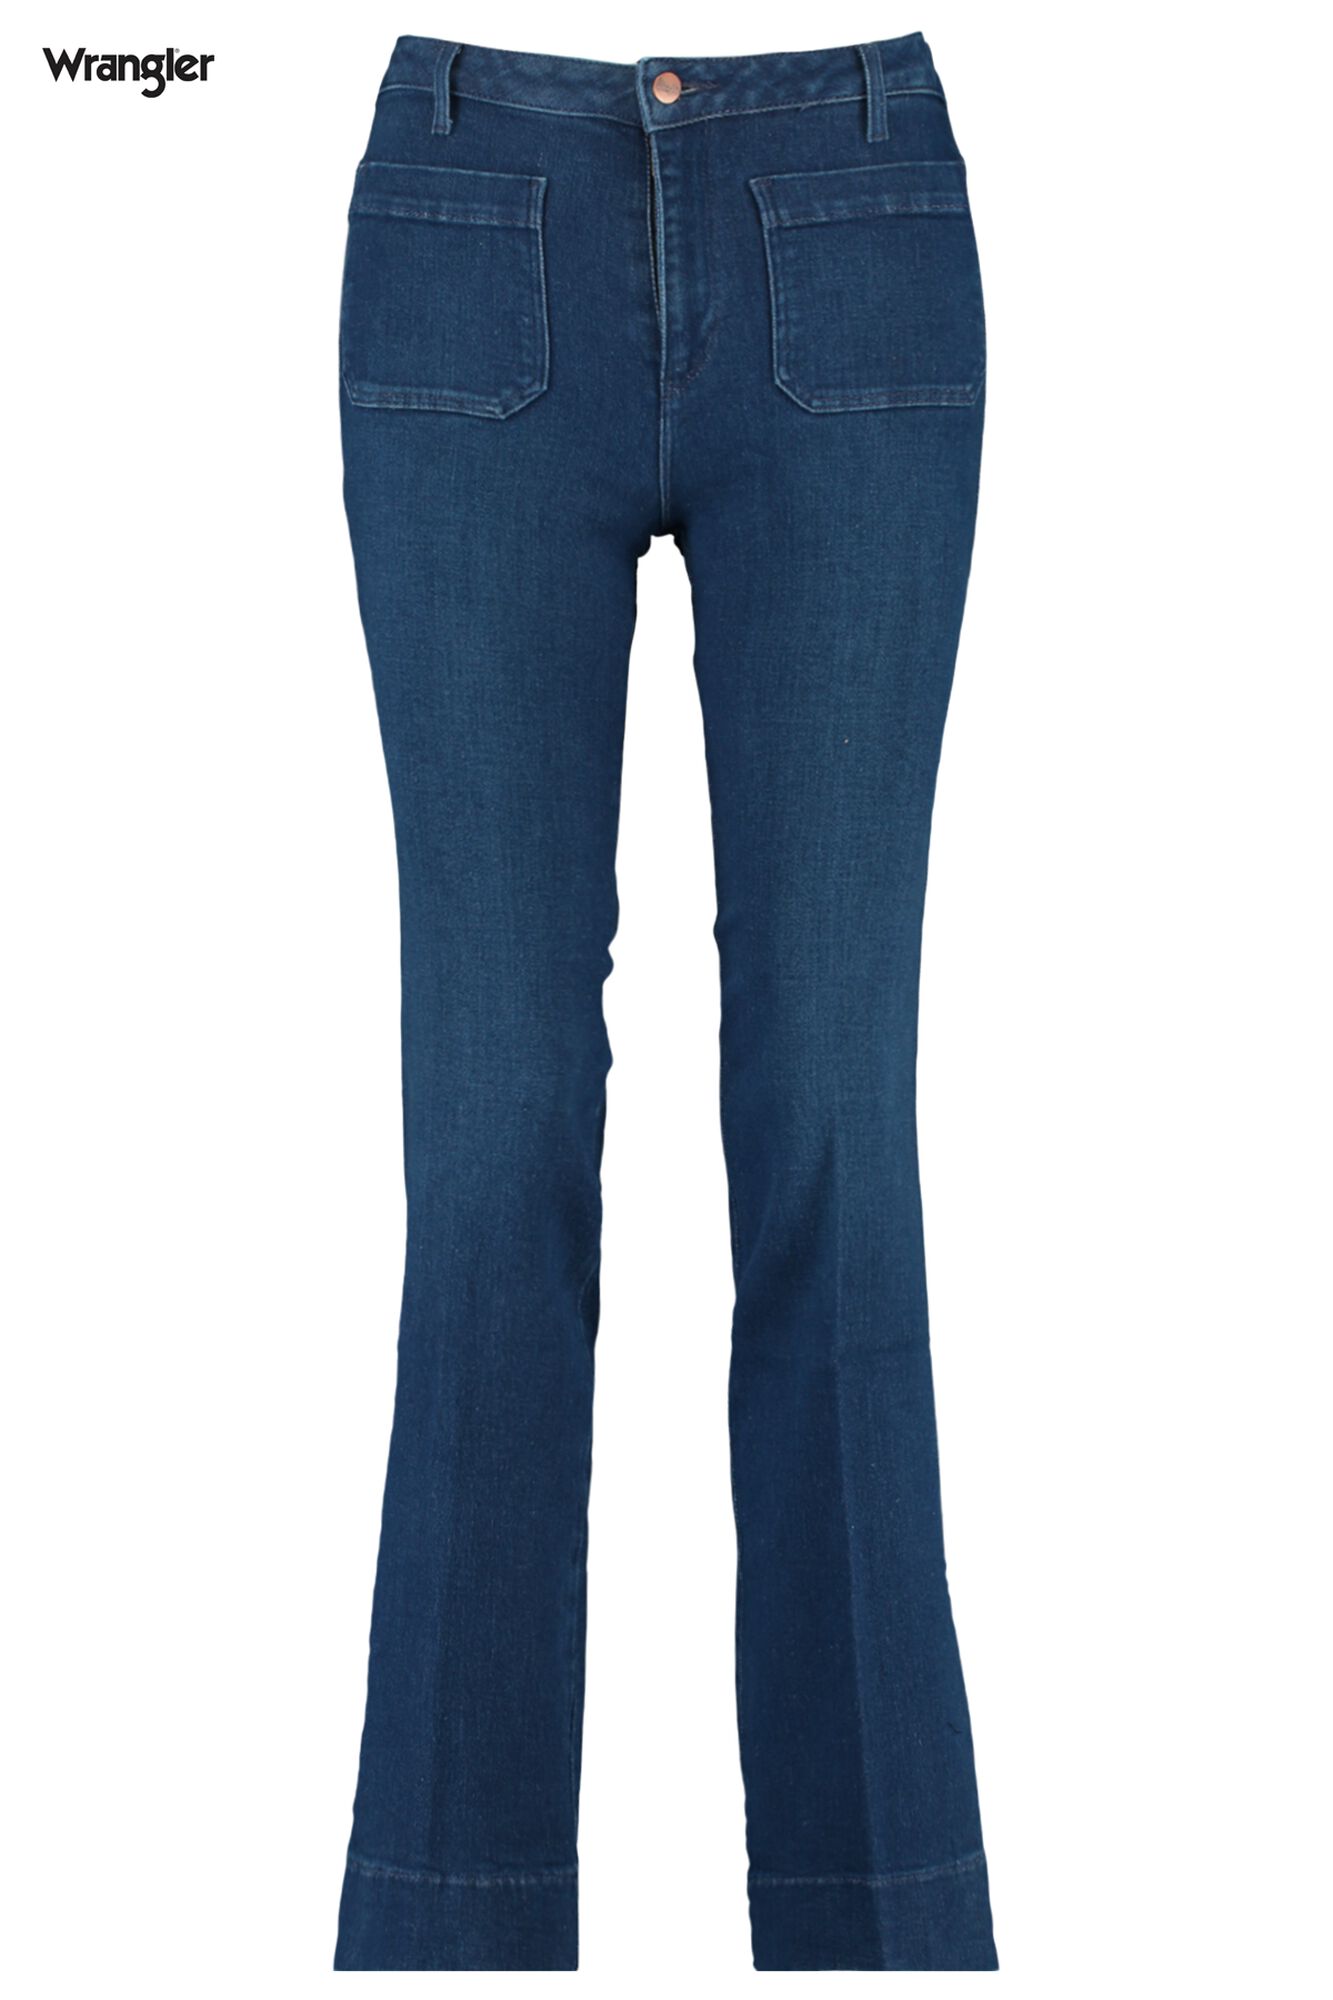 Women Flared jeans Wrangler Blue Buy Online